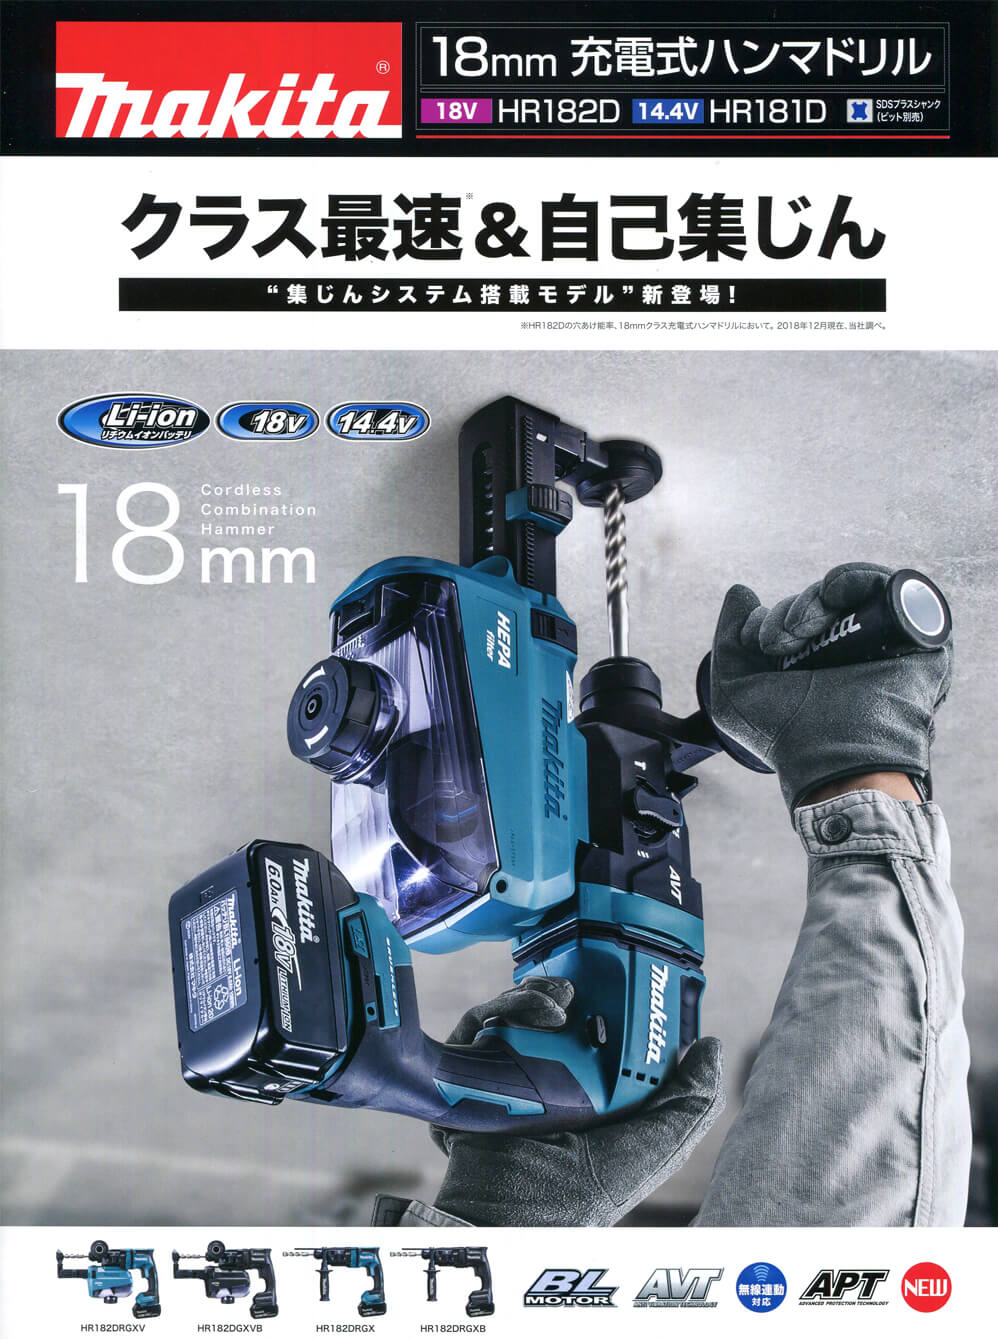 マキタ HR182DRGX 18mm充電式ハンマドリル 18V-6.0Ah ウエダ金物【公式 ...